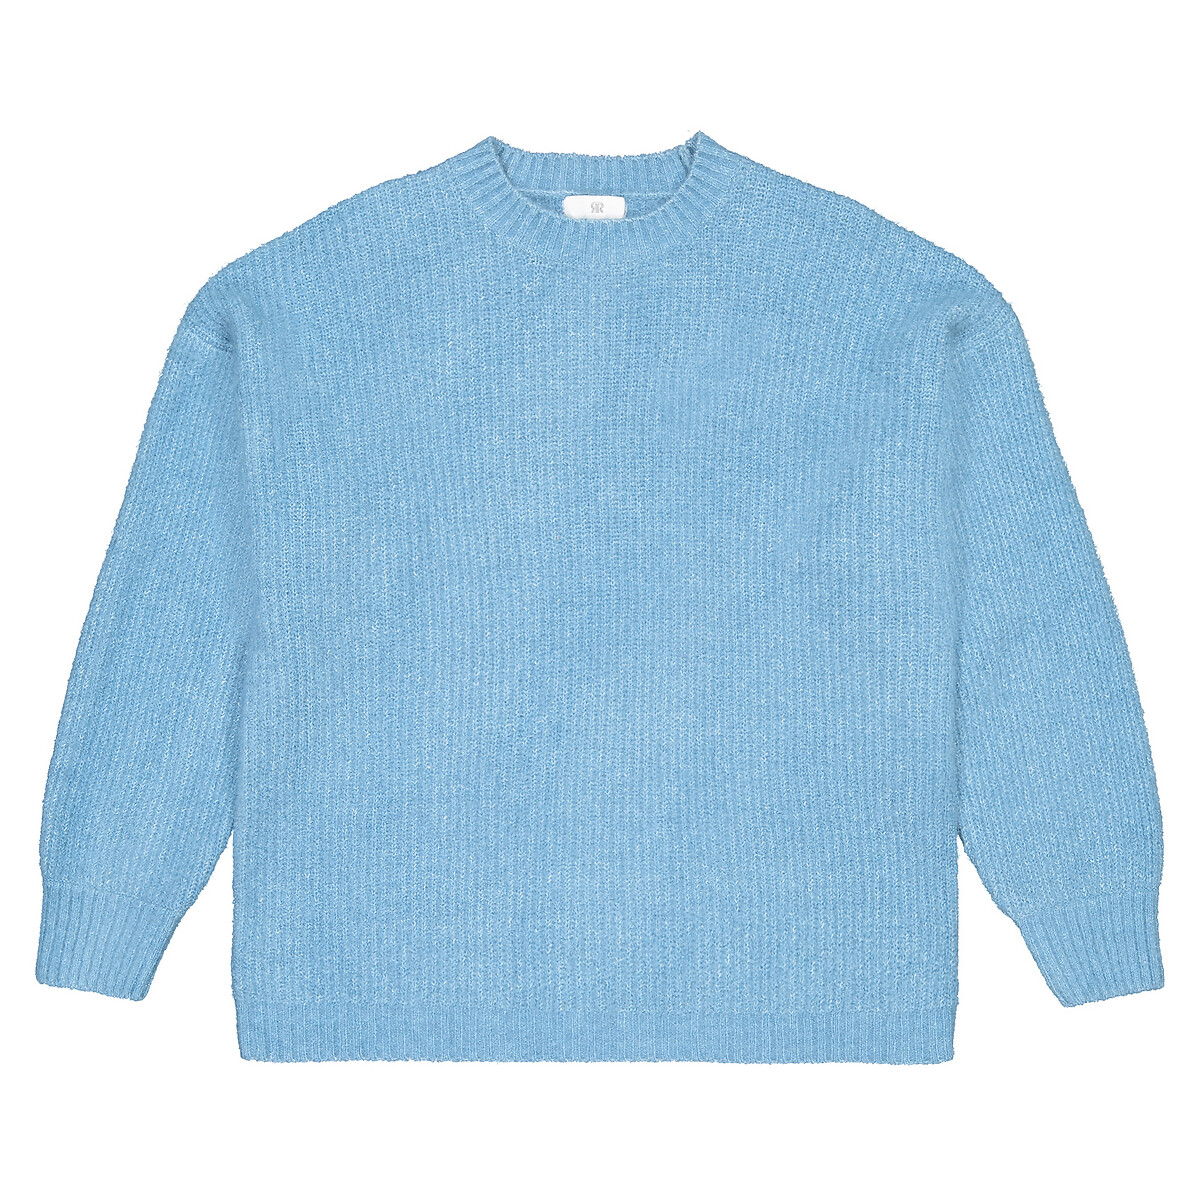 Пуловер LaRedoute В английском стиле из трикотажа 10-18 лет 16 лет - 162 см синий, размер 16 лет - 162 см - фото 3